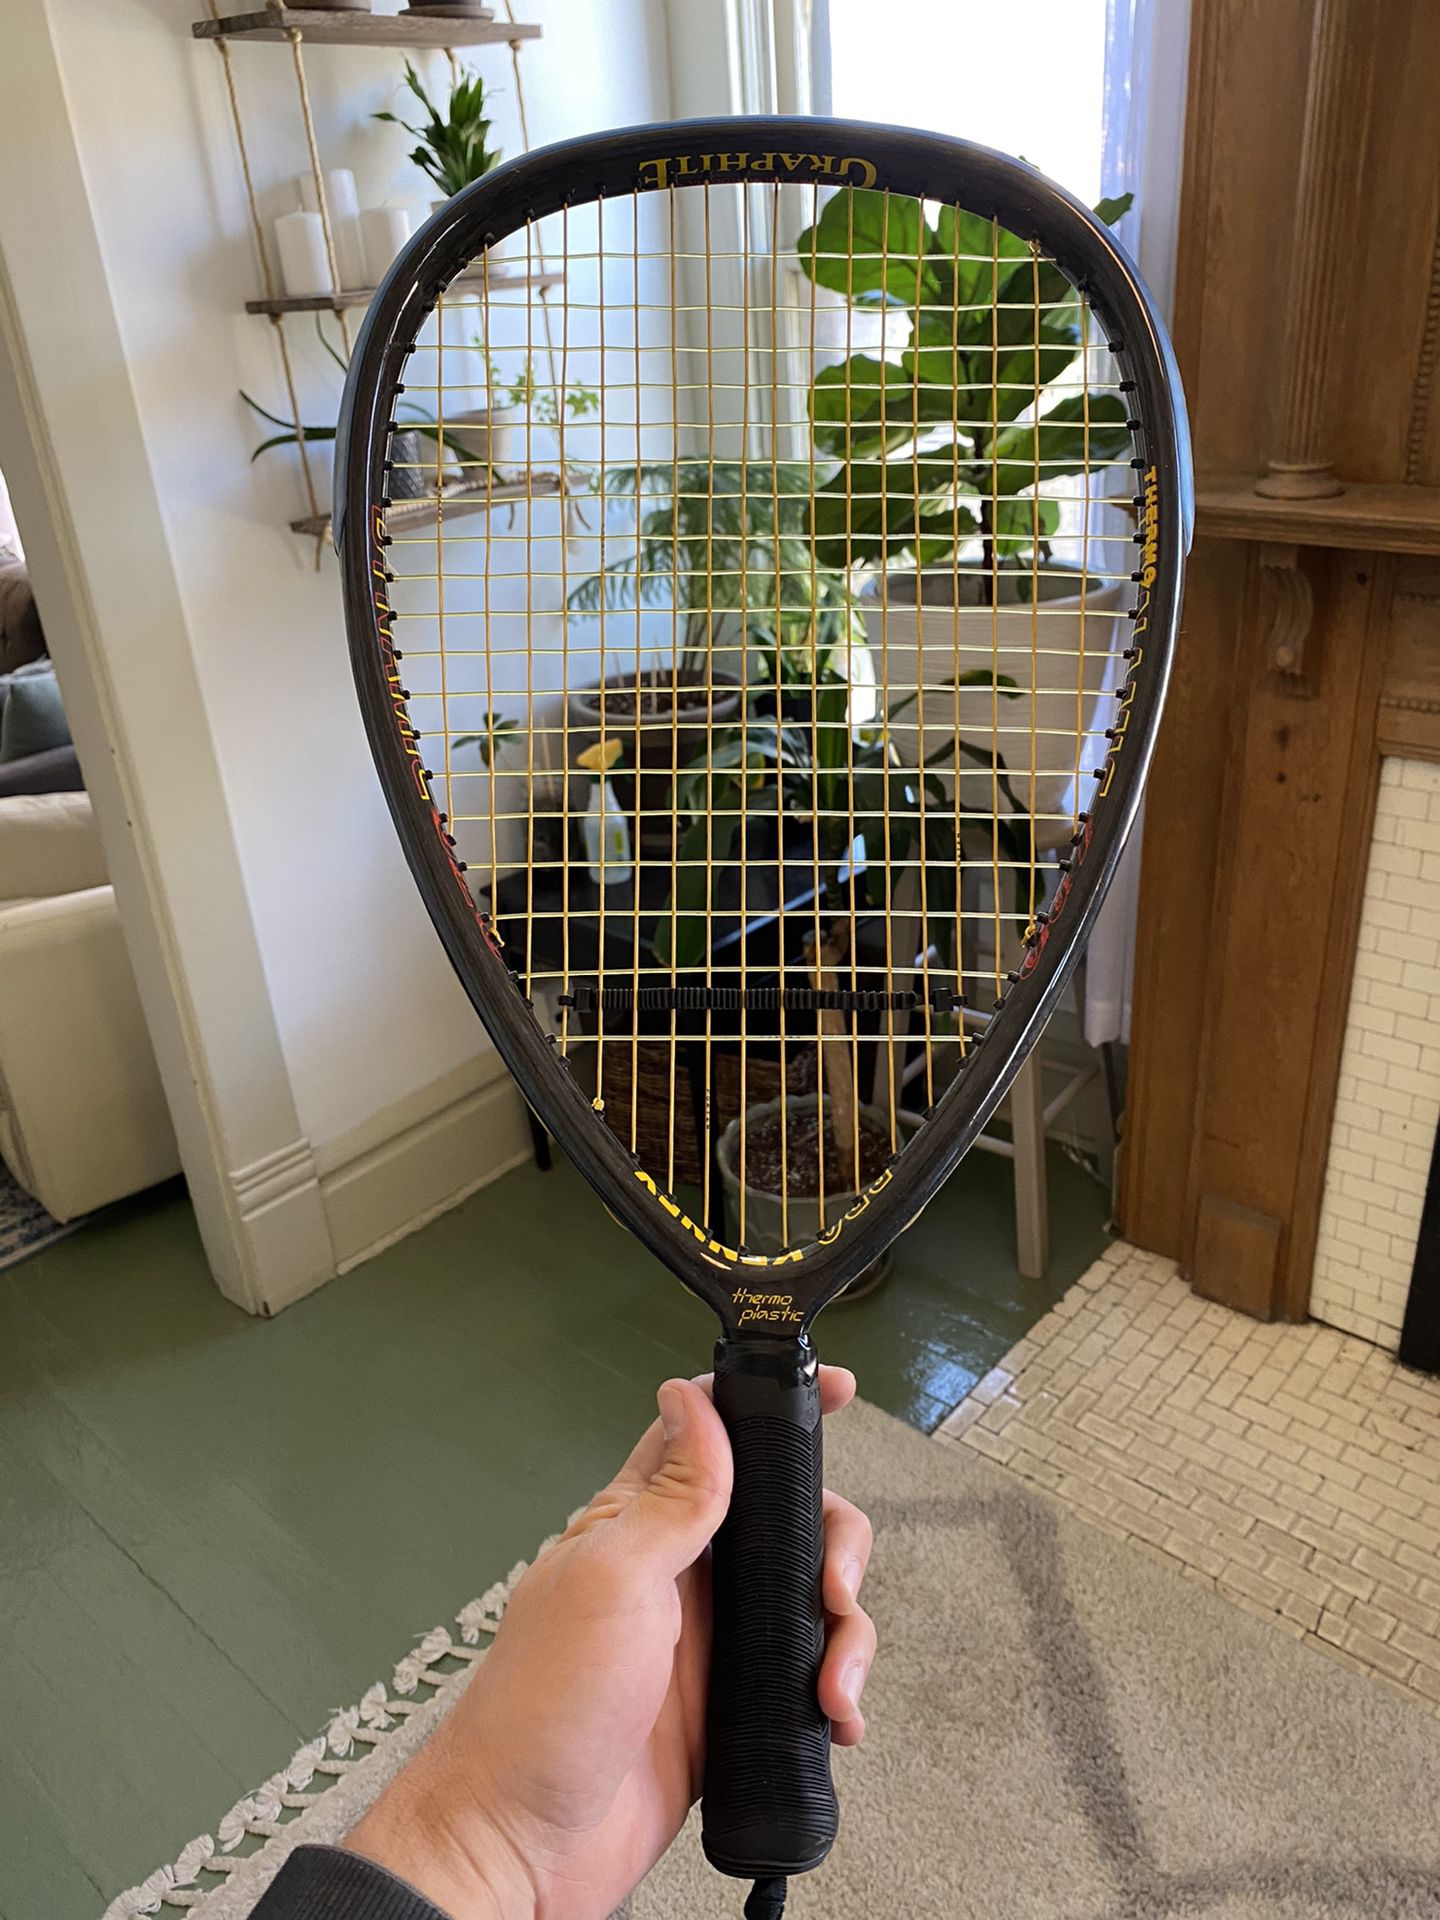 Raquet Ball Racket / Tennis Racket / Pro Kennex 